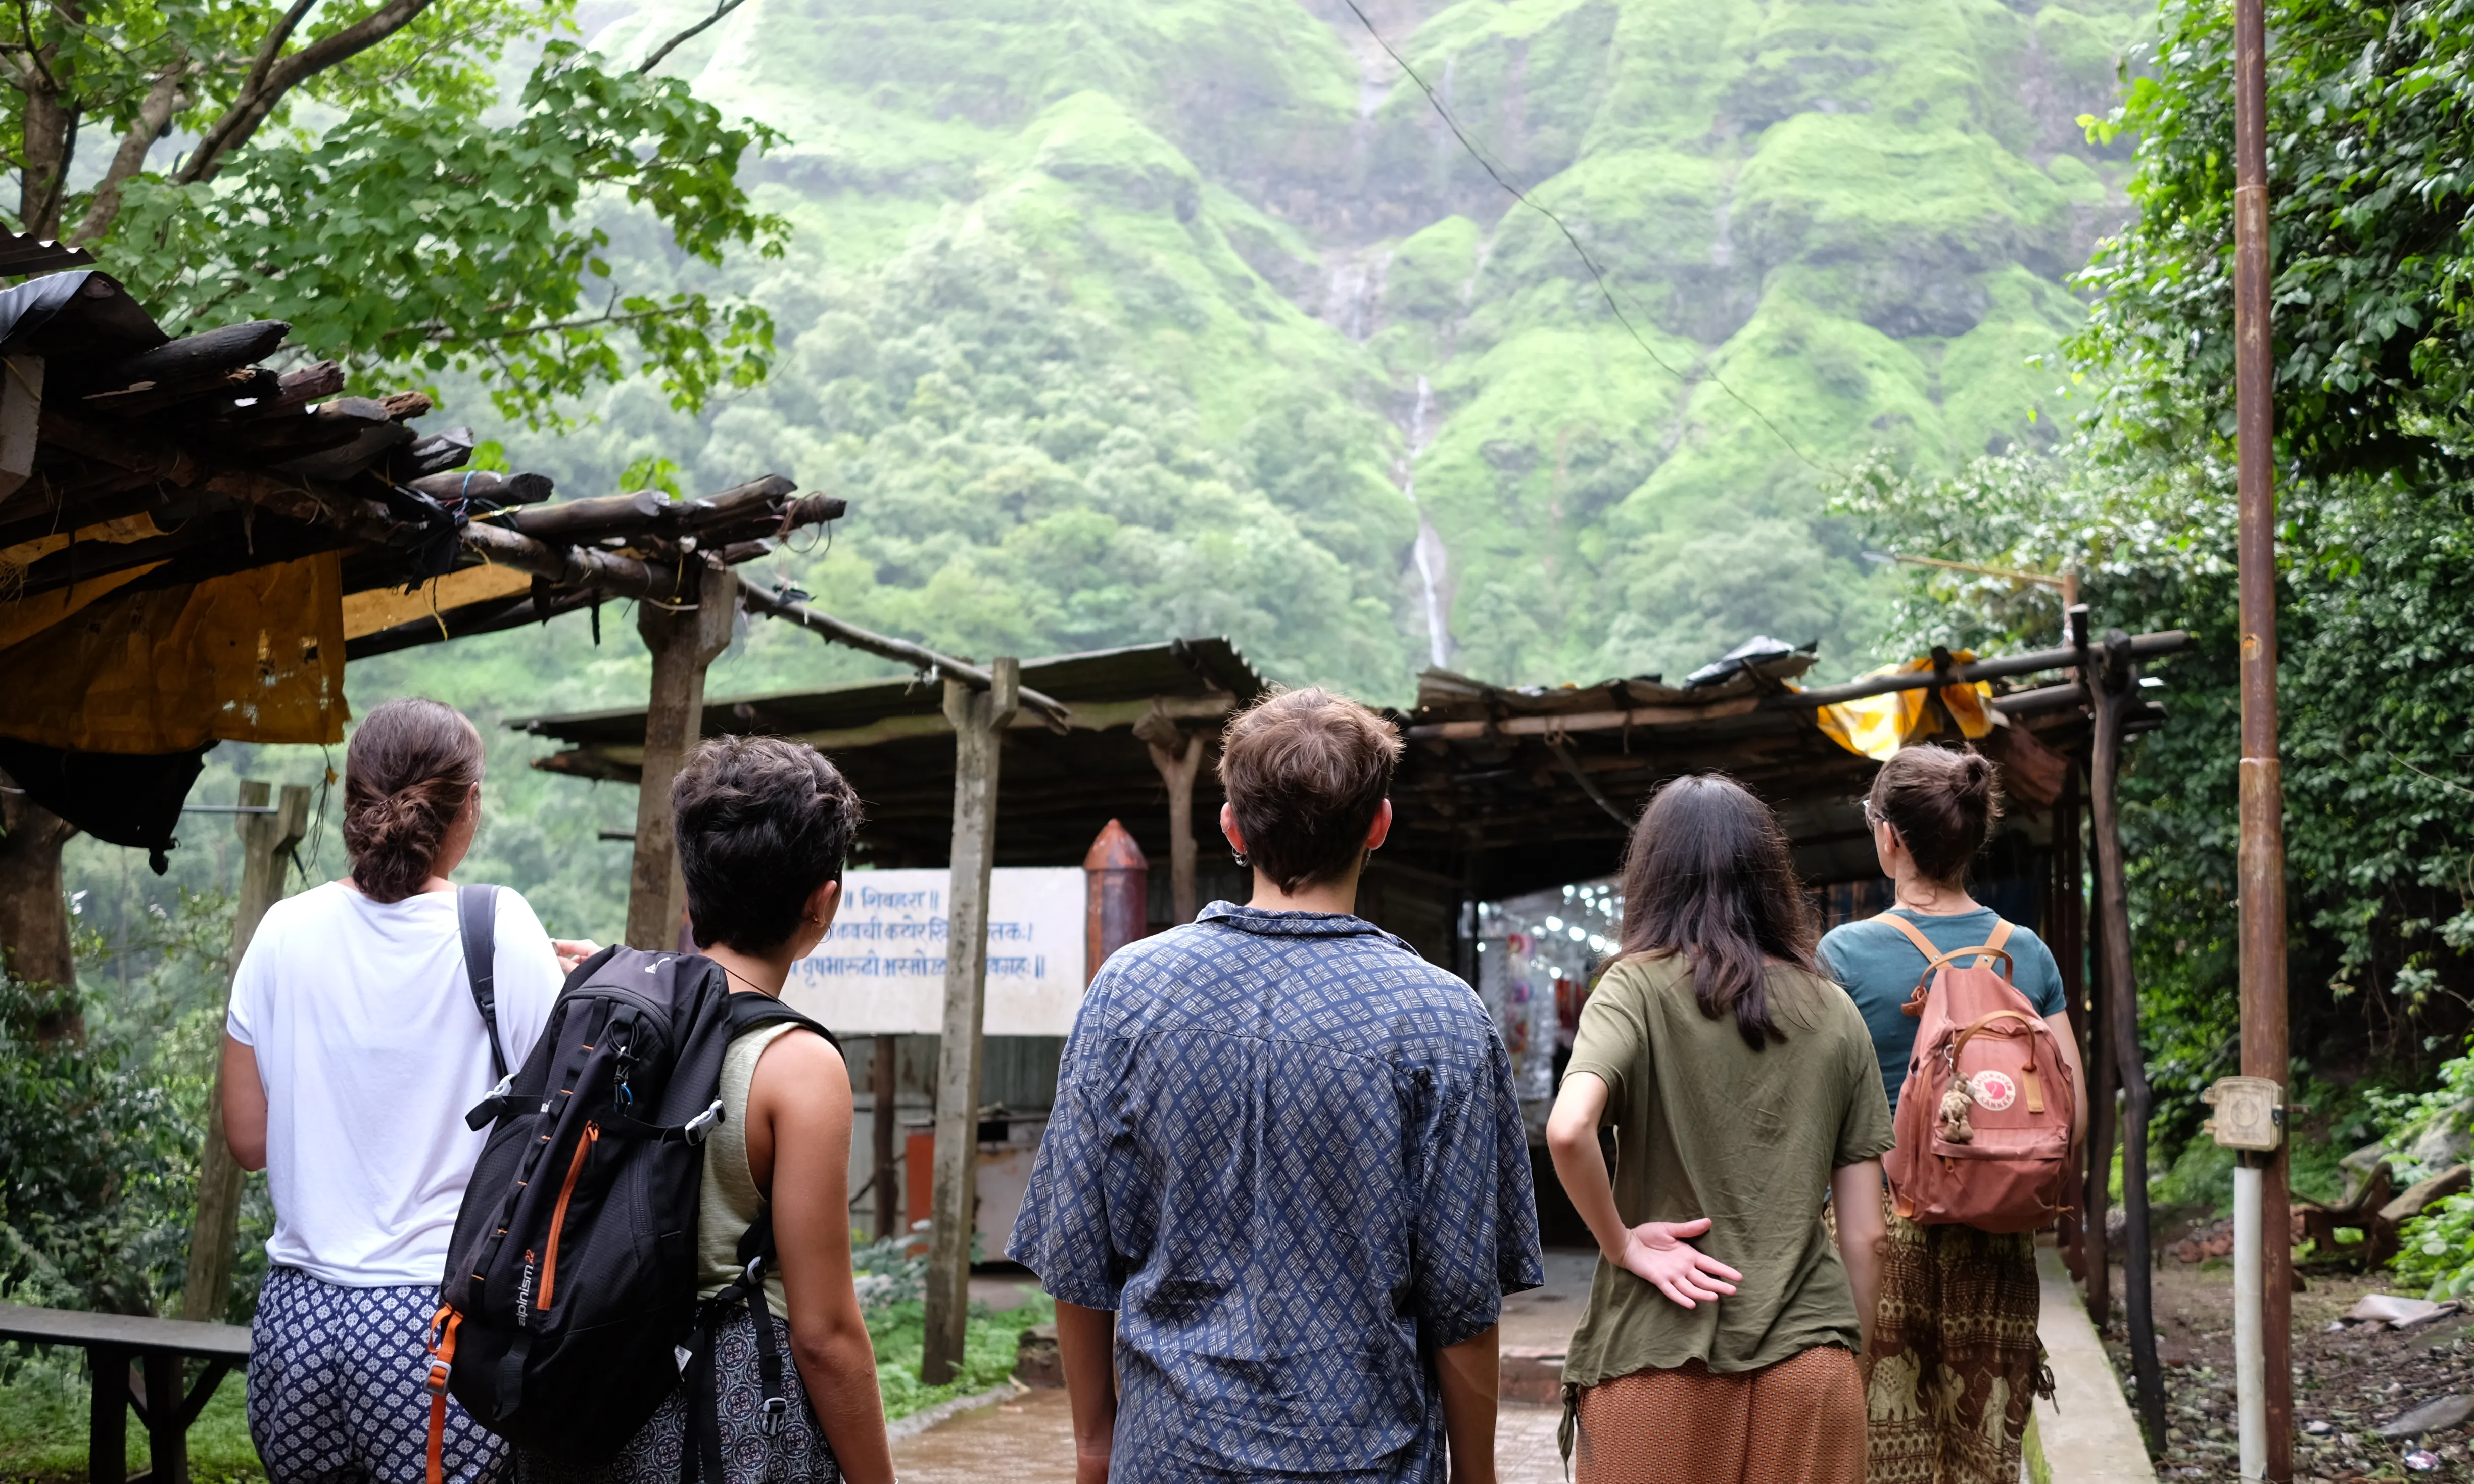 Quatre persones voluntàries observen la natura en un Camp de Solidaritat a la Índia.